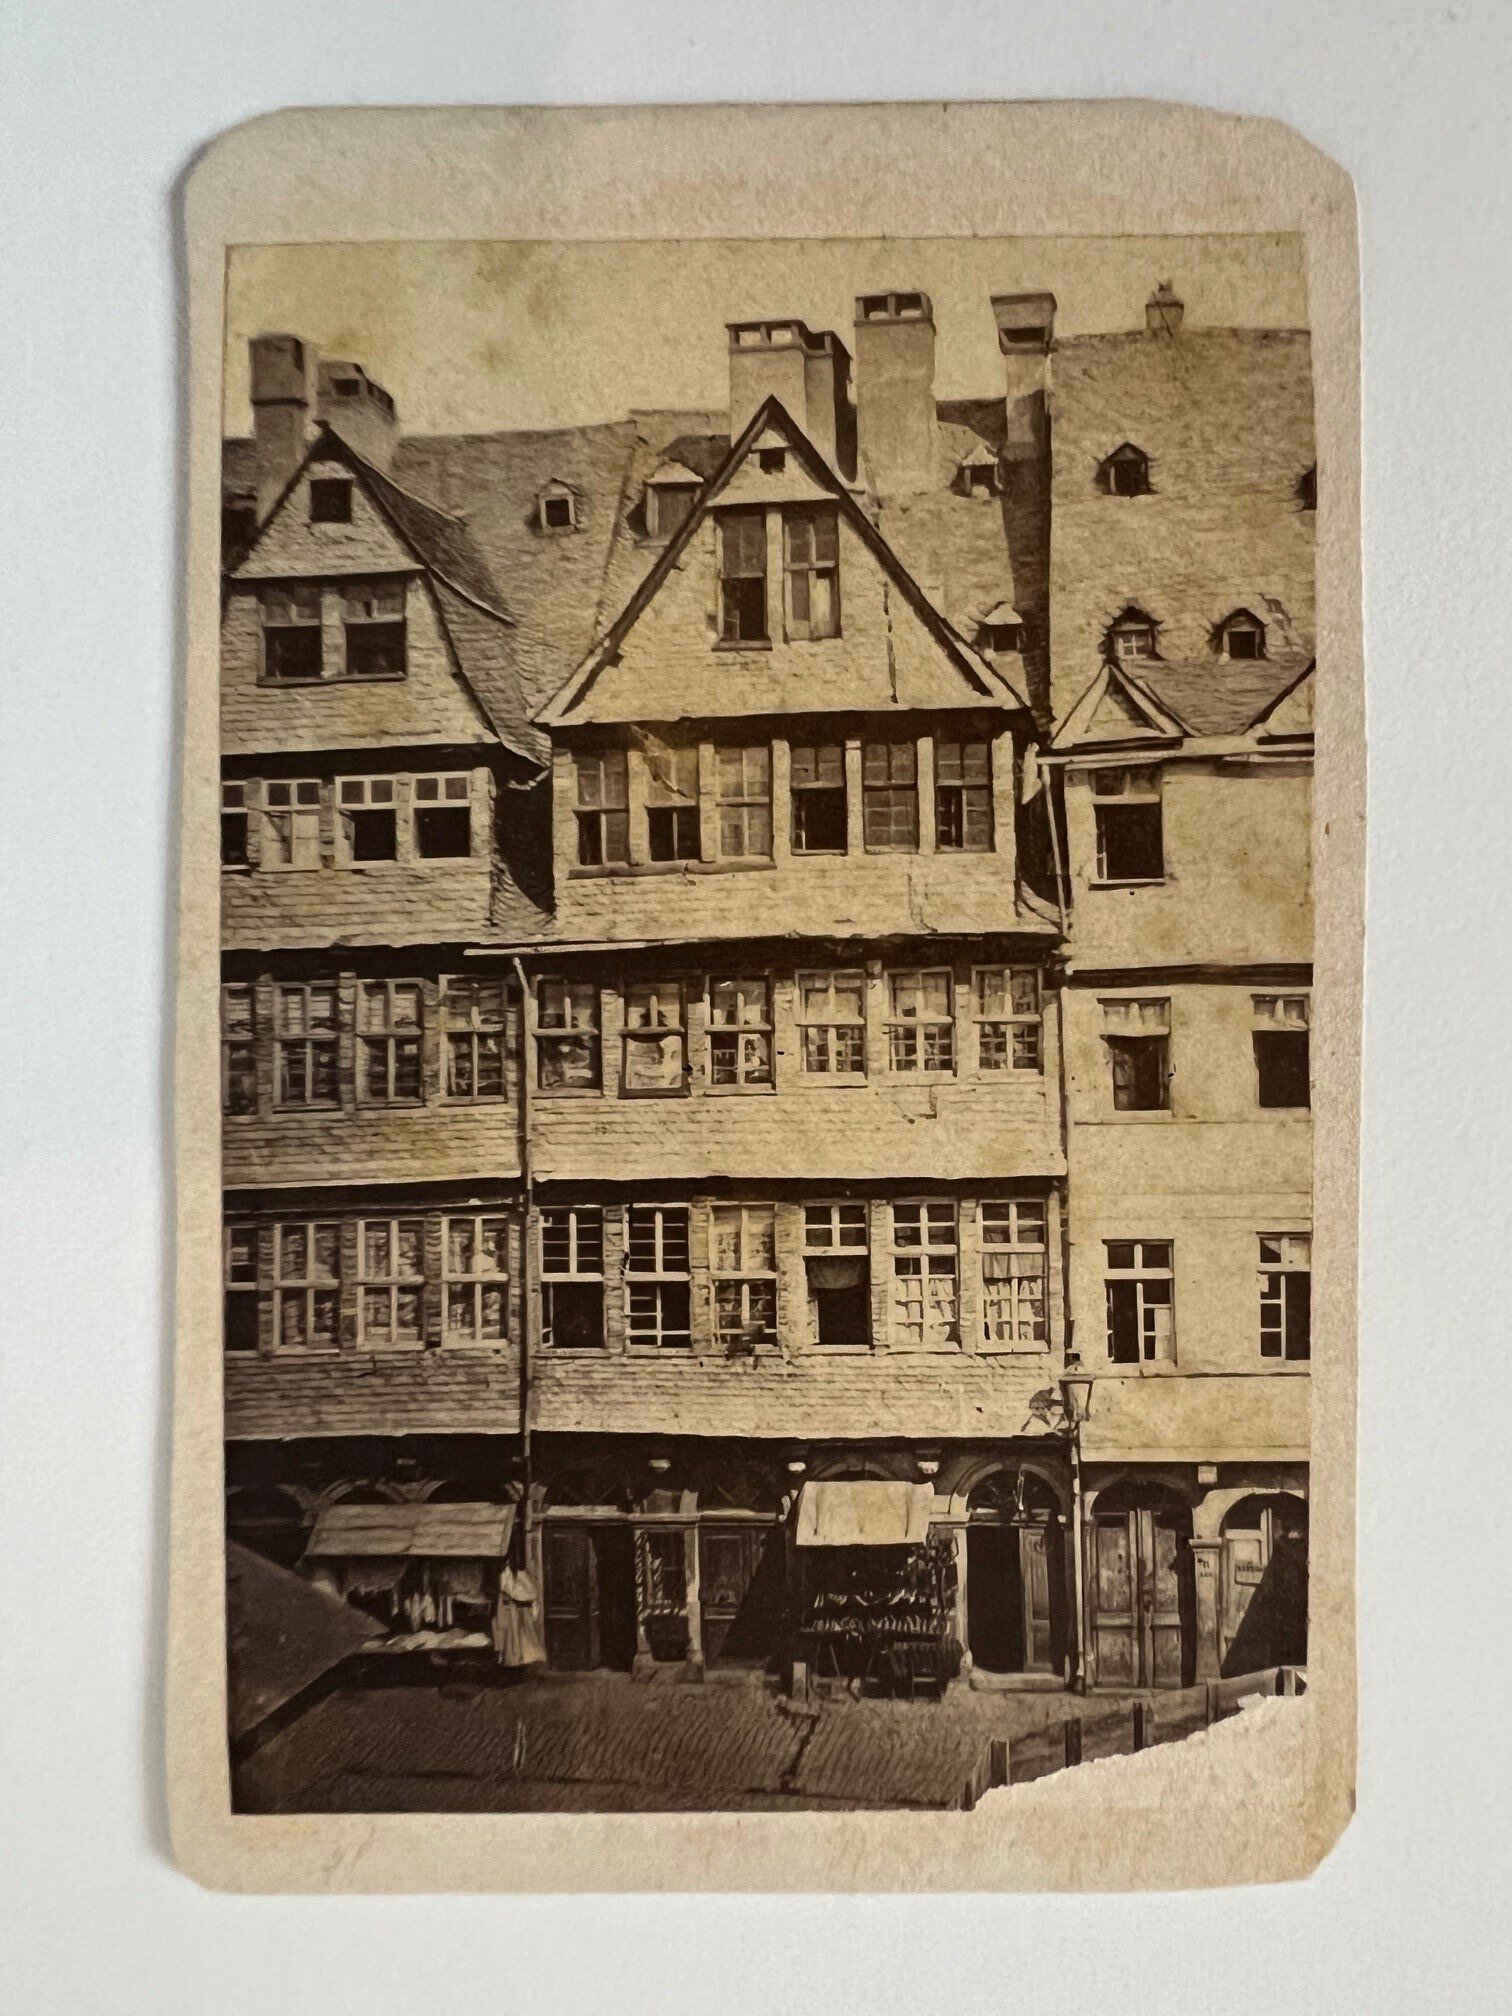 CdV, Unbekannter Fotograf, Rothschildhaus, ca. 1865. (Taunus-Rhein-Main - Regionalgeschichtliche Sammlung Dr. Stefan Naas CC BY-NC-SA)